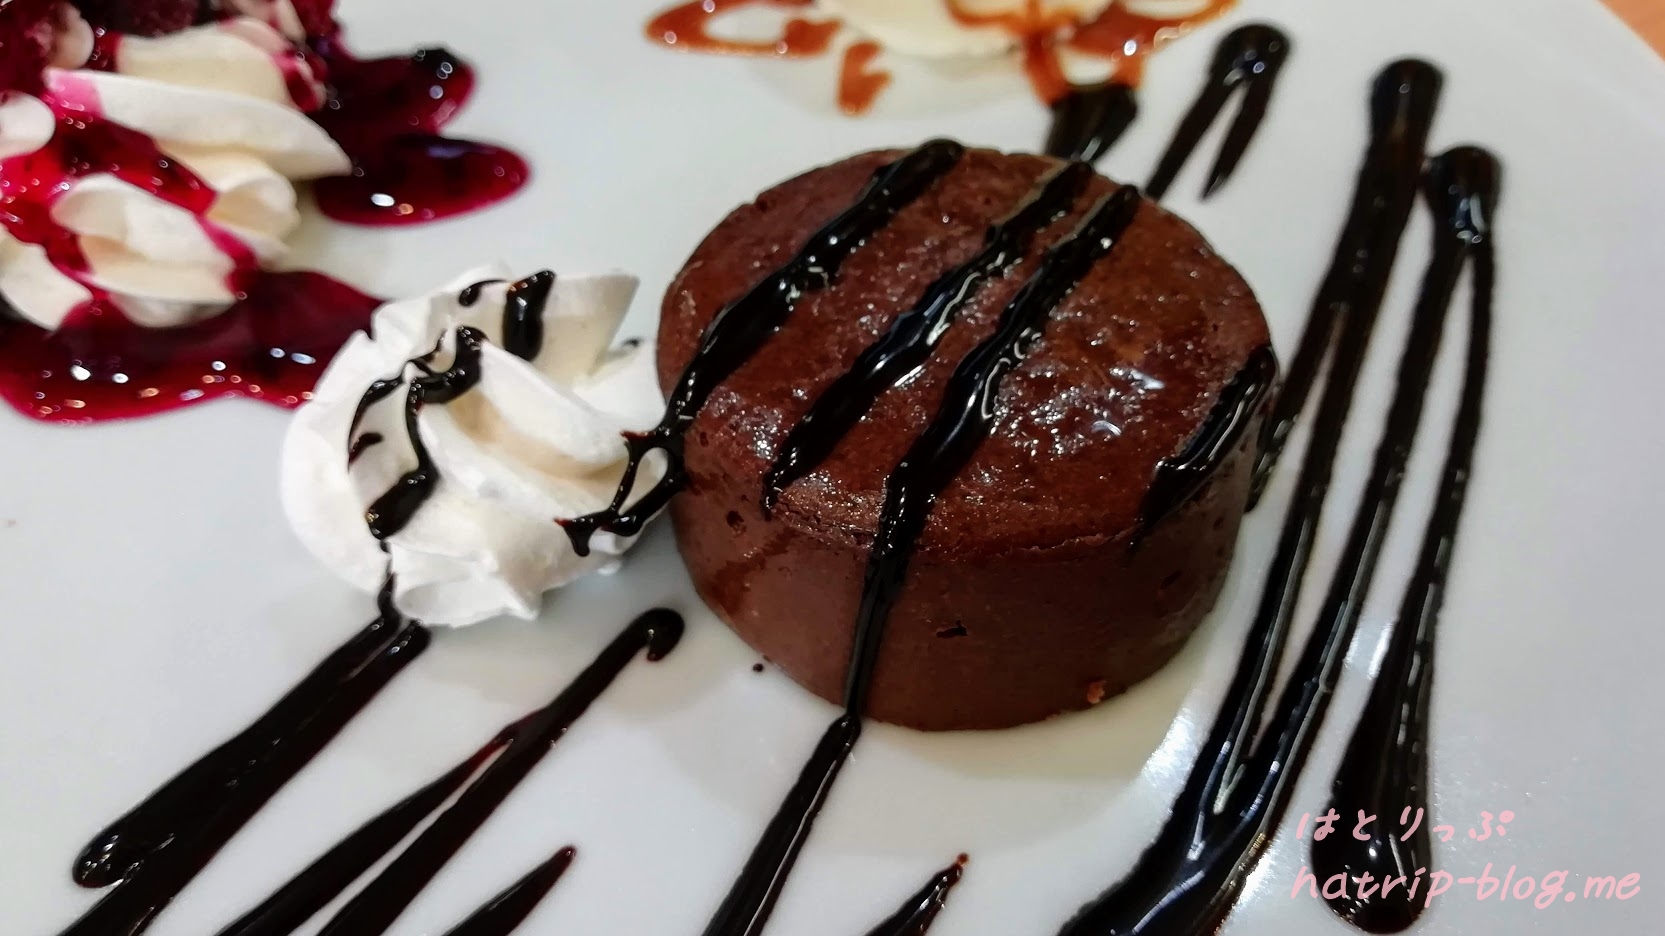 星野リゾート リゾナーレ八ヶ岳 ファーマーズケーキ 半熟ショコラケーキセット チョコレートシロップ